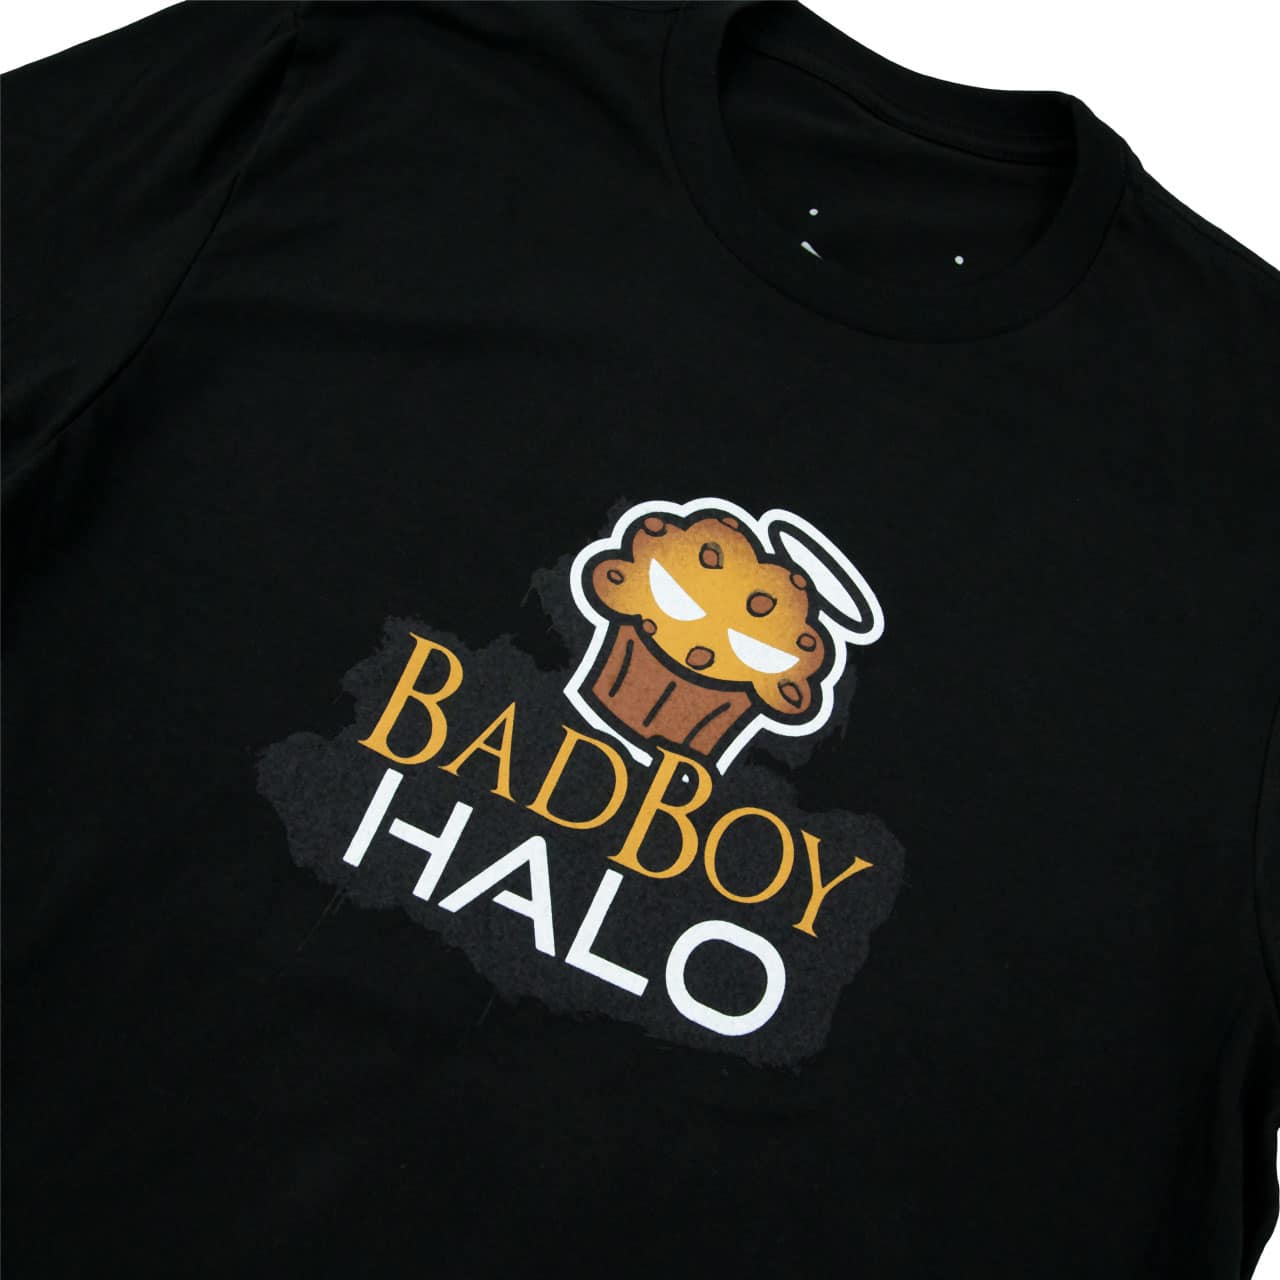 BFCM BadBoyHalo Chocolate Chip T-Shirt